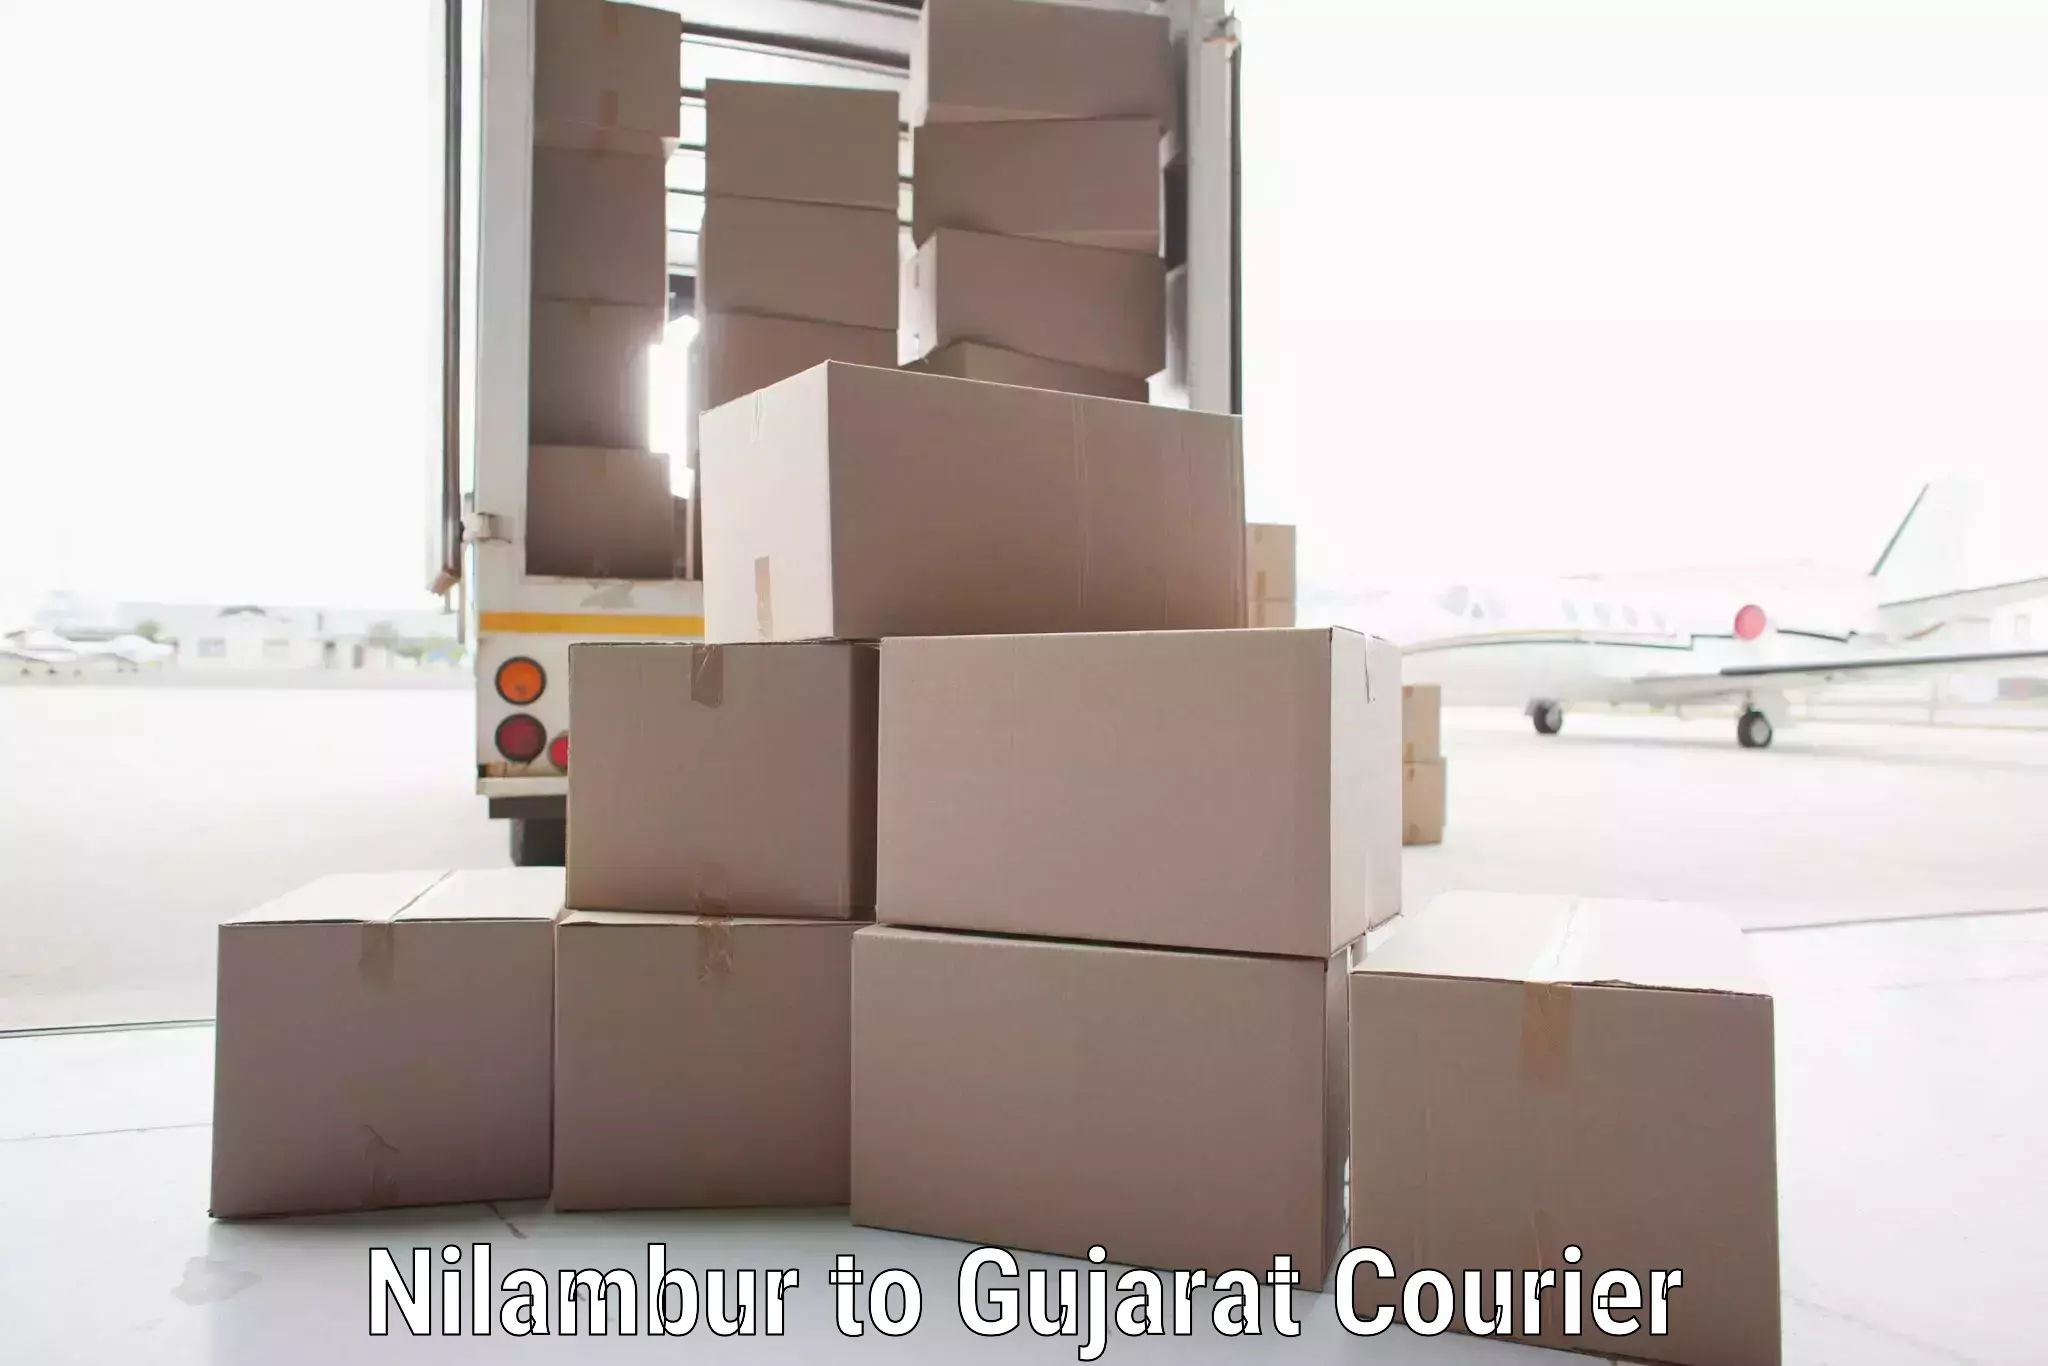 Courier service comparison Nilambur to Matar